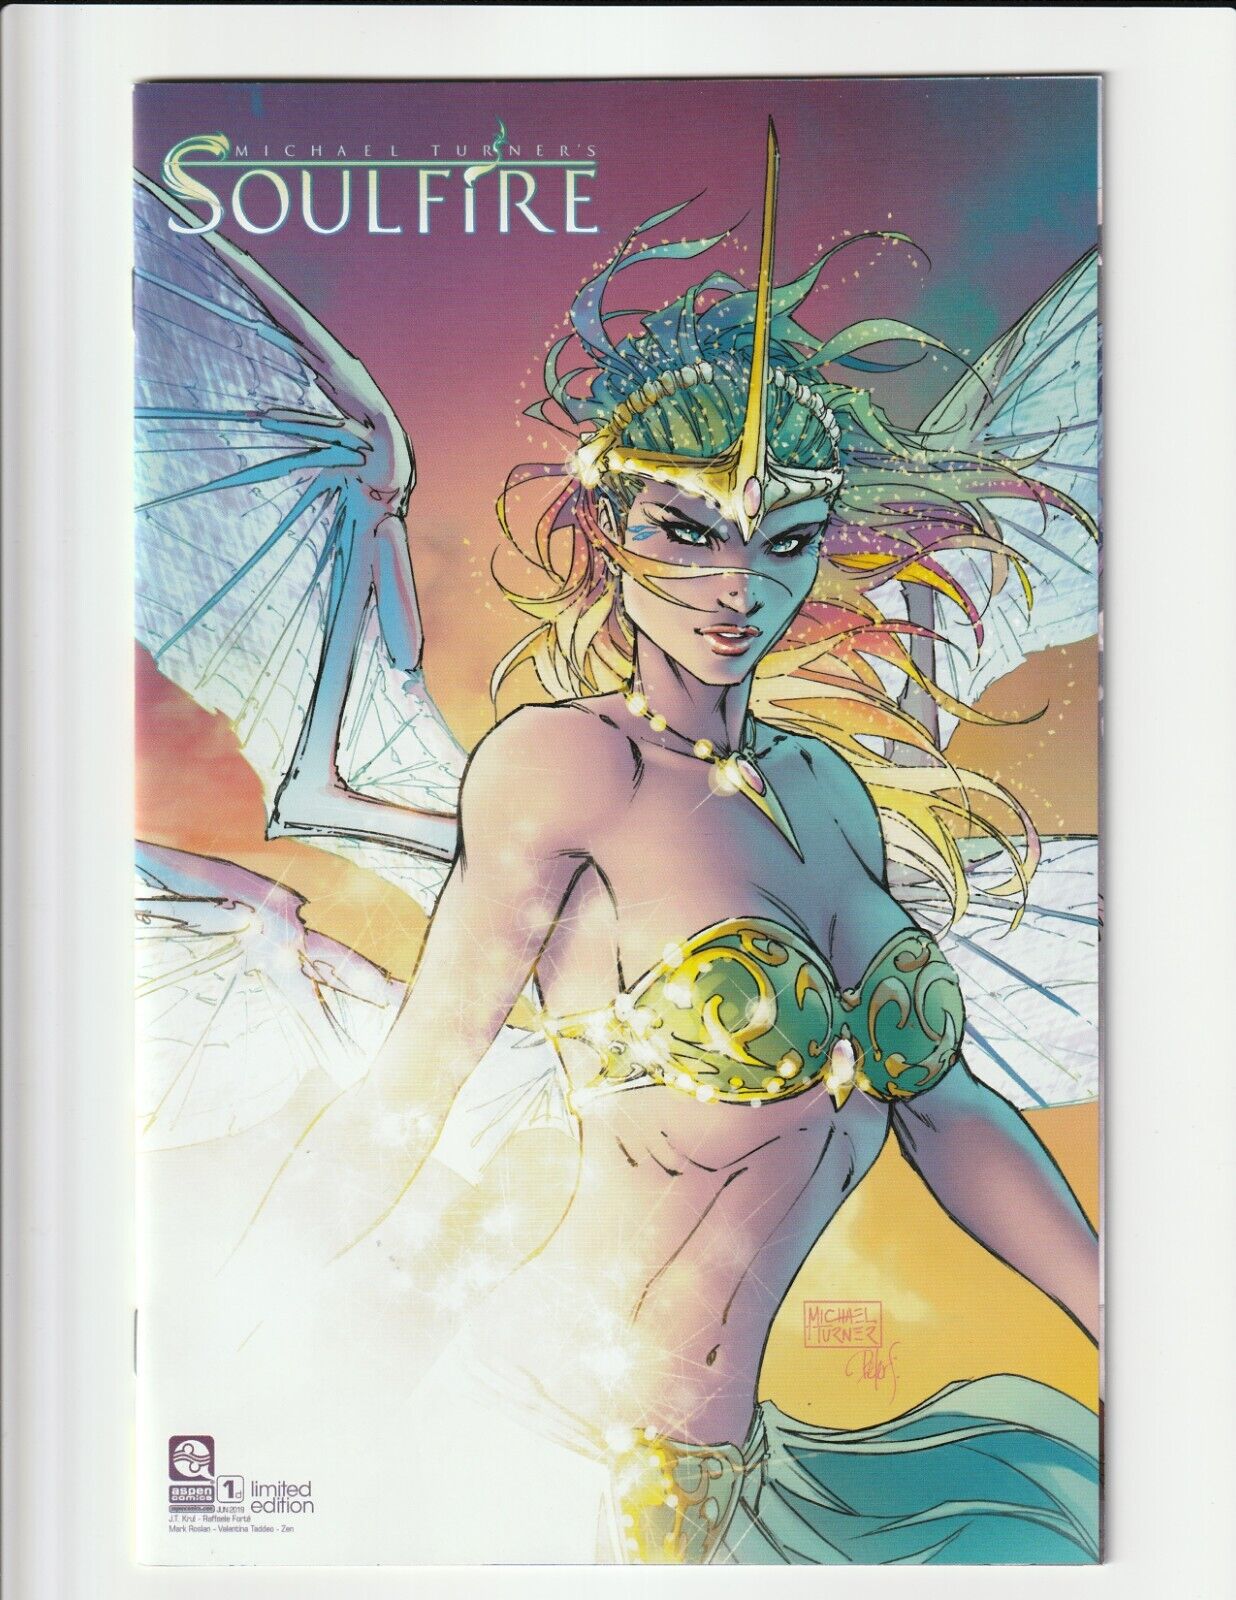 SOULFIRE #1 (2019) COVER D EXTENDED RETAILER VARIANT MICHAEL TURNER ASPEN COMICS